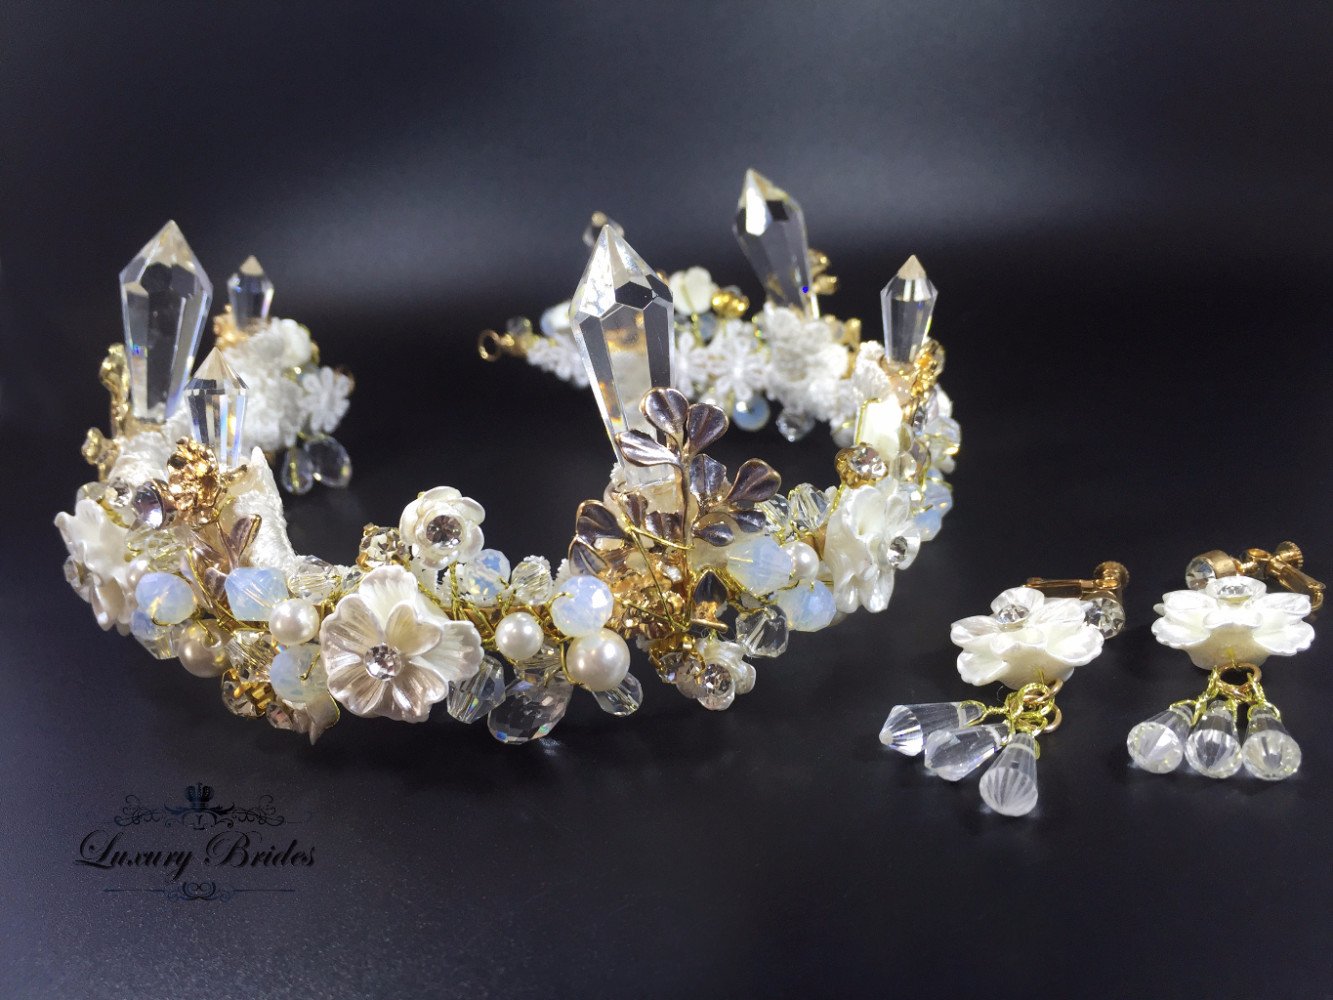 Crystal Crowns